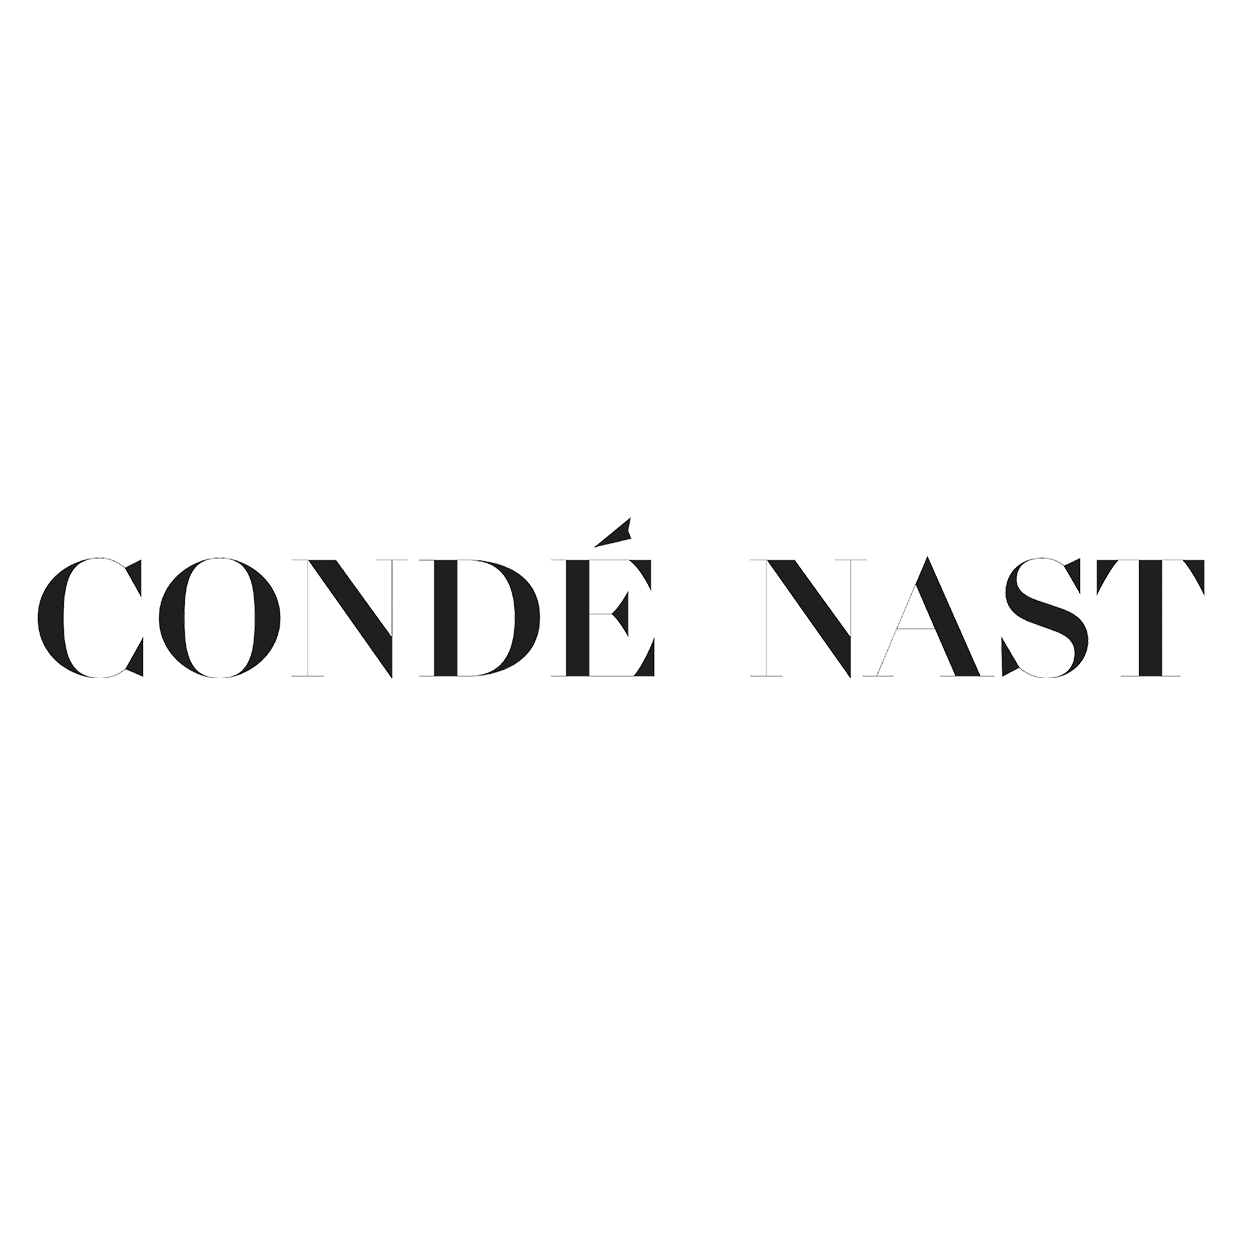 https://cdn.exchangewire.com/wp-content/uploads/2020/05/conde_nast_logo.jpg